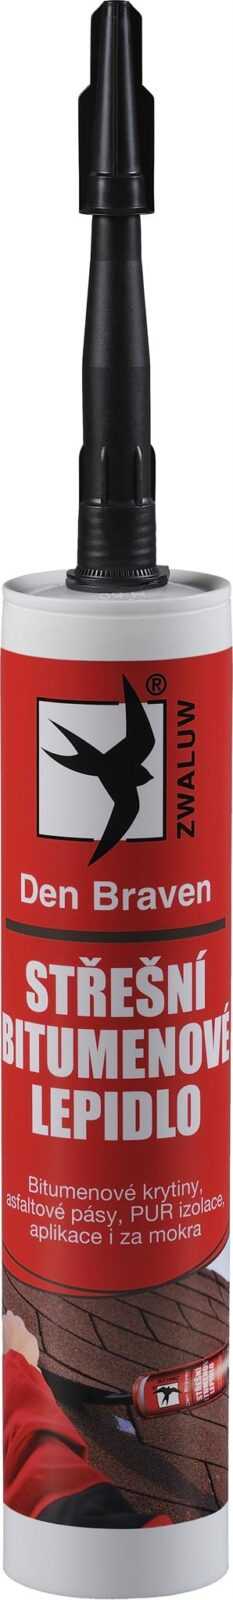 Lepidlo střešní bitumenové Den Braven 310 ml DEN BRAVEN